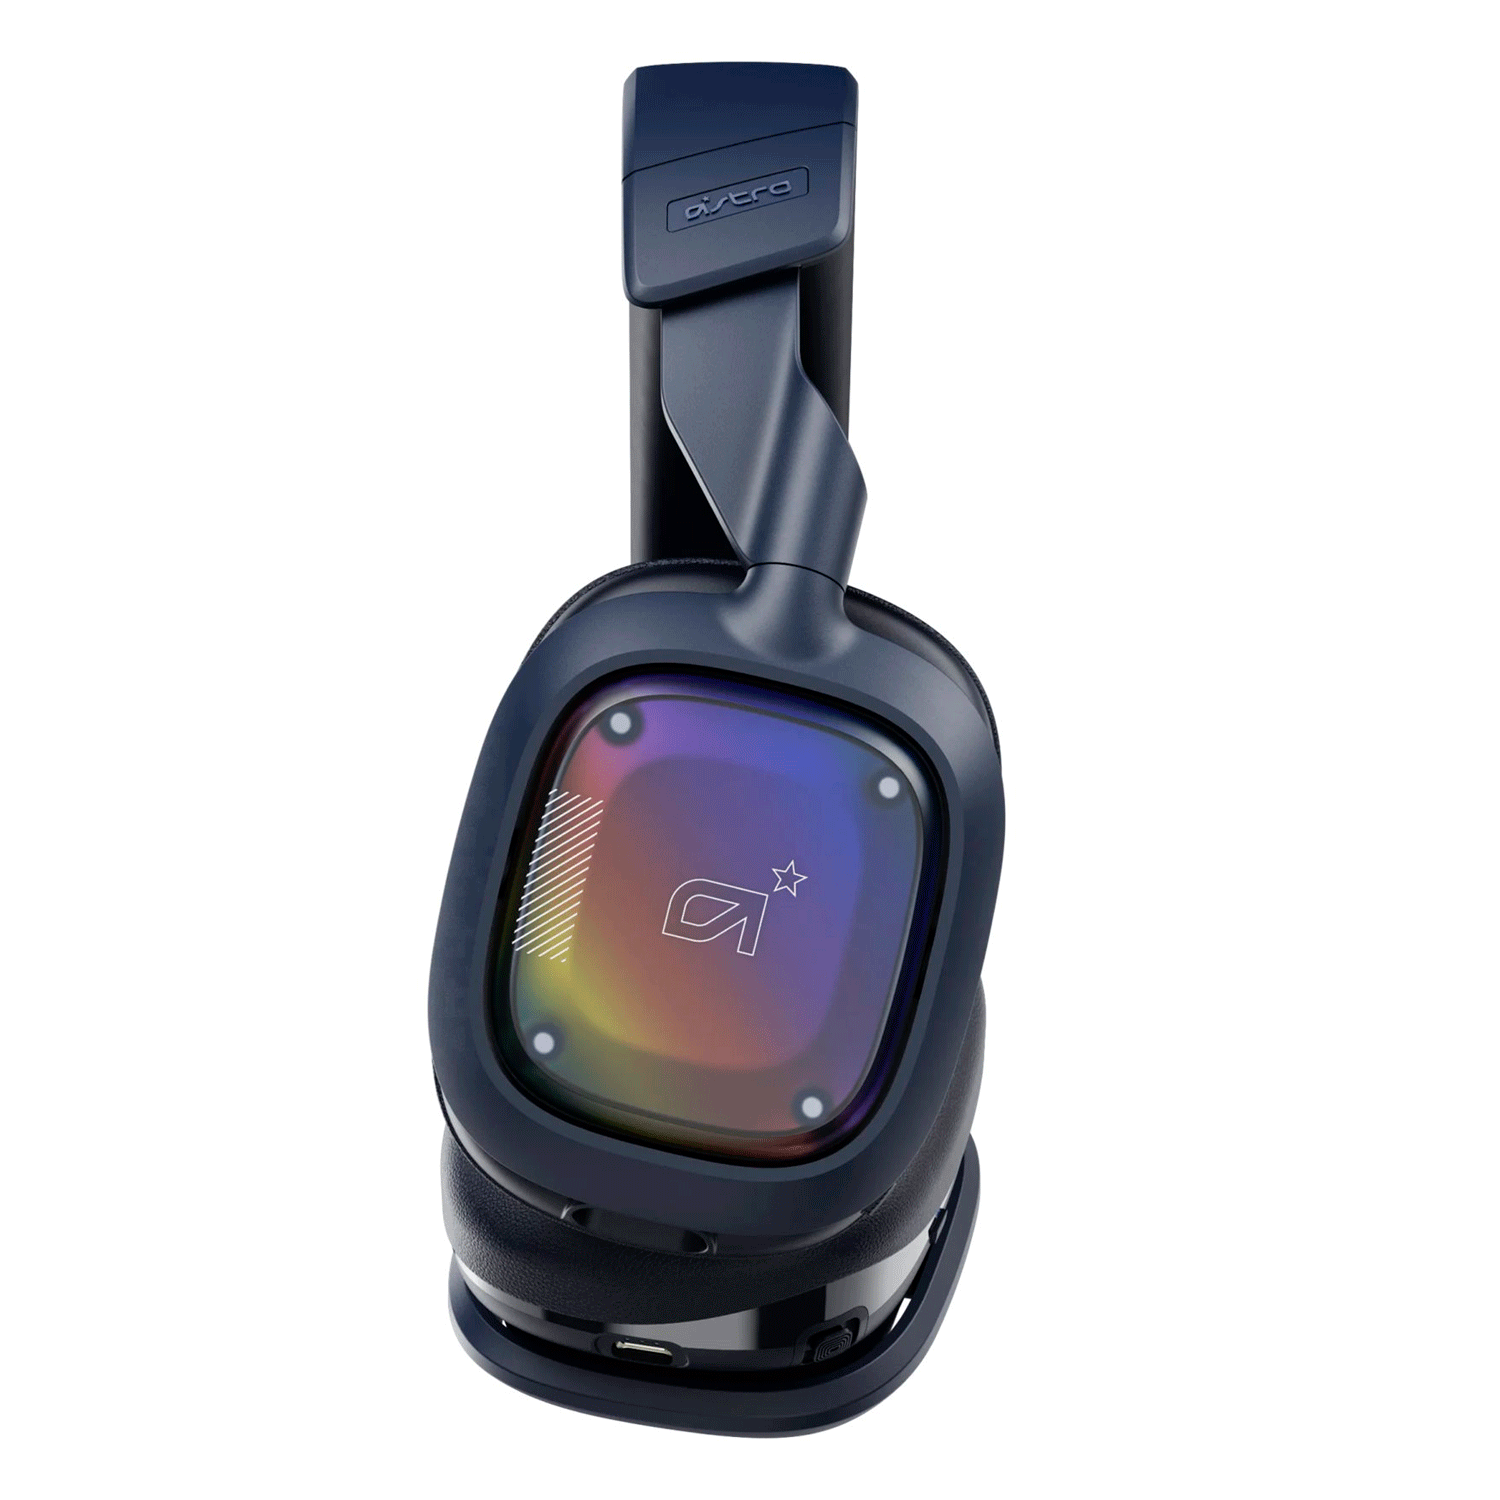 Headset Gamer Logitech Astro A30 Wireless - Navy Blue (939-002006)